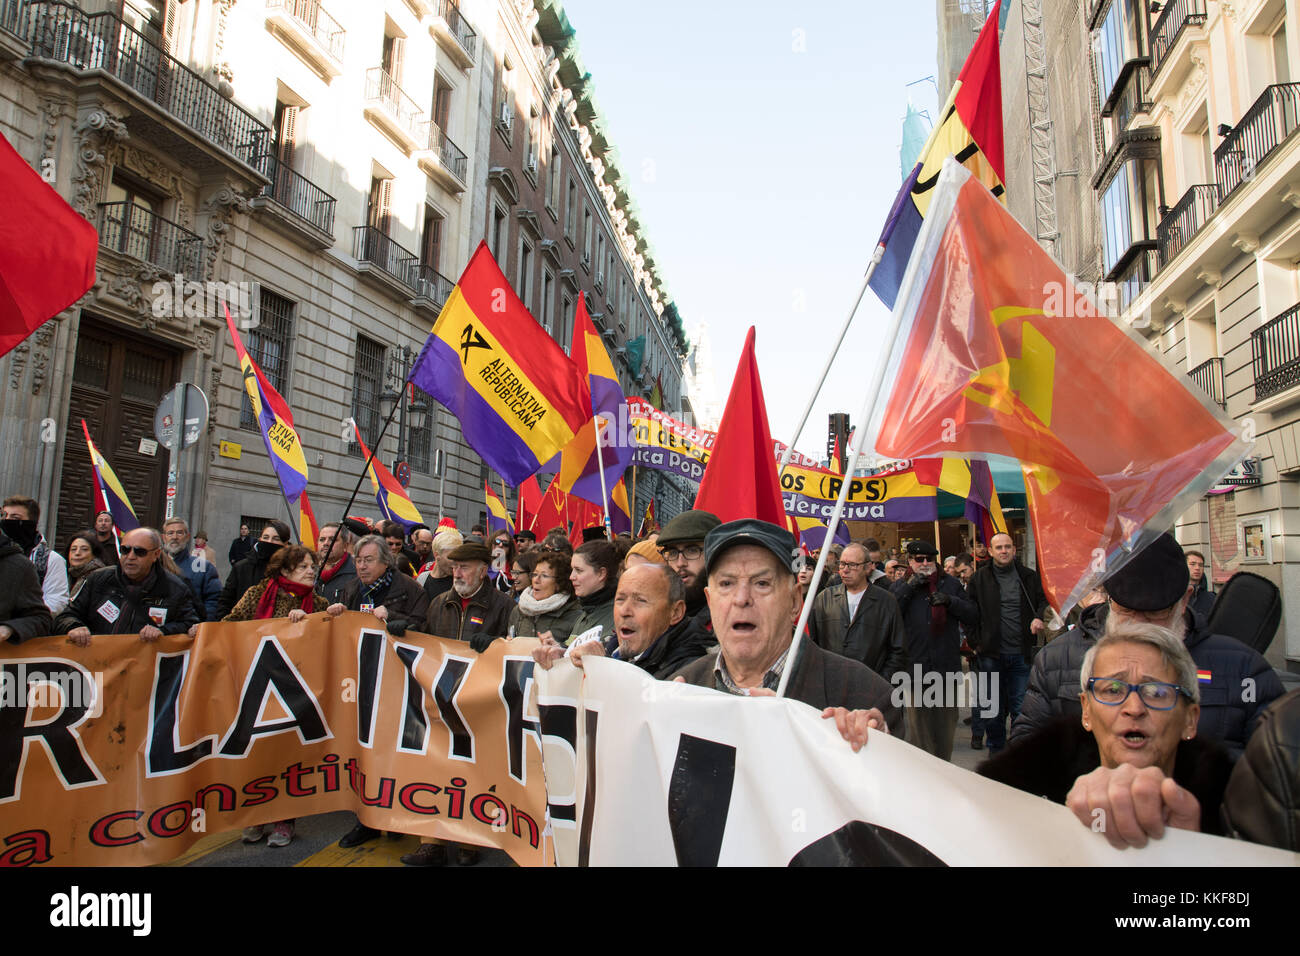 Madrid, Spagna. 6 dicembre, 2017. banner principale della manifestazione svoltasi a Madrid che rivendicano per la terza repubblica spagnola a calle Alcala. © valentin sama-rojo/alamy live news. Foto Stock